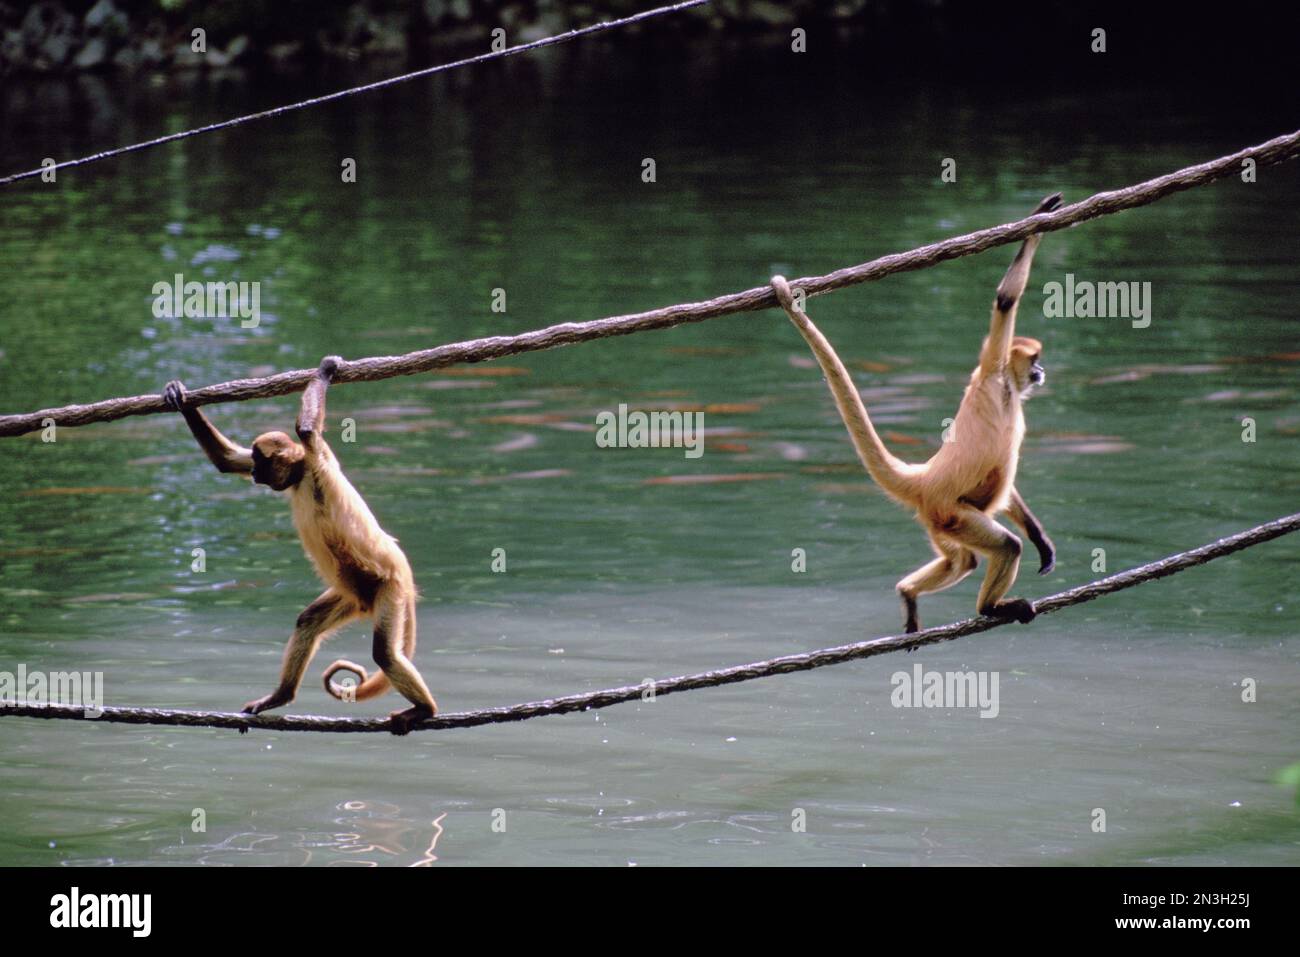 Zwei Spider-Affen, die in einem Zoo an Seilen über Wasser spielen; Omaha, Nebraska, Vereinigte Staaten von Amerika Stockfoto